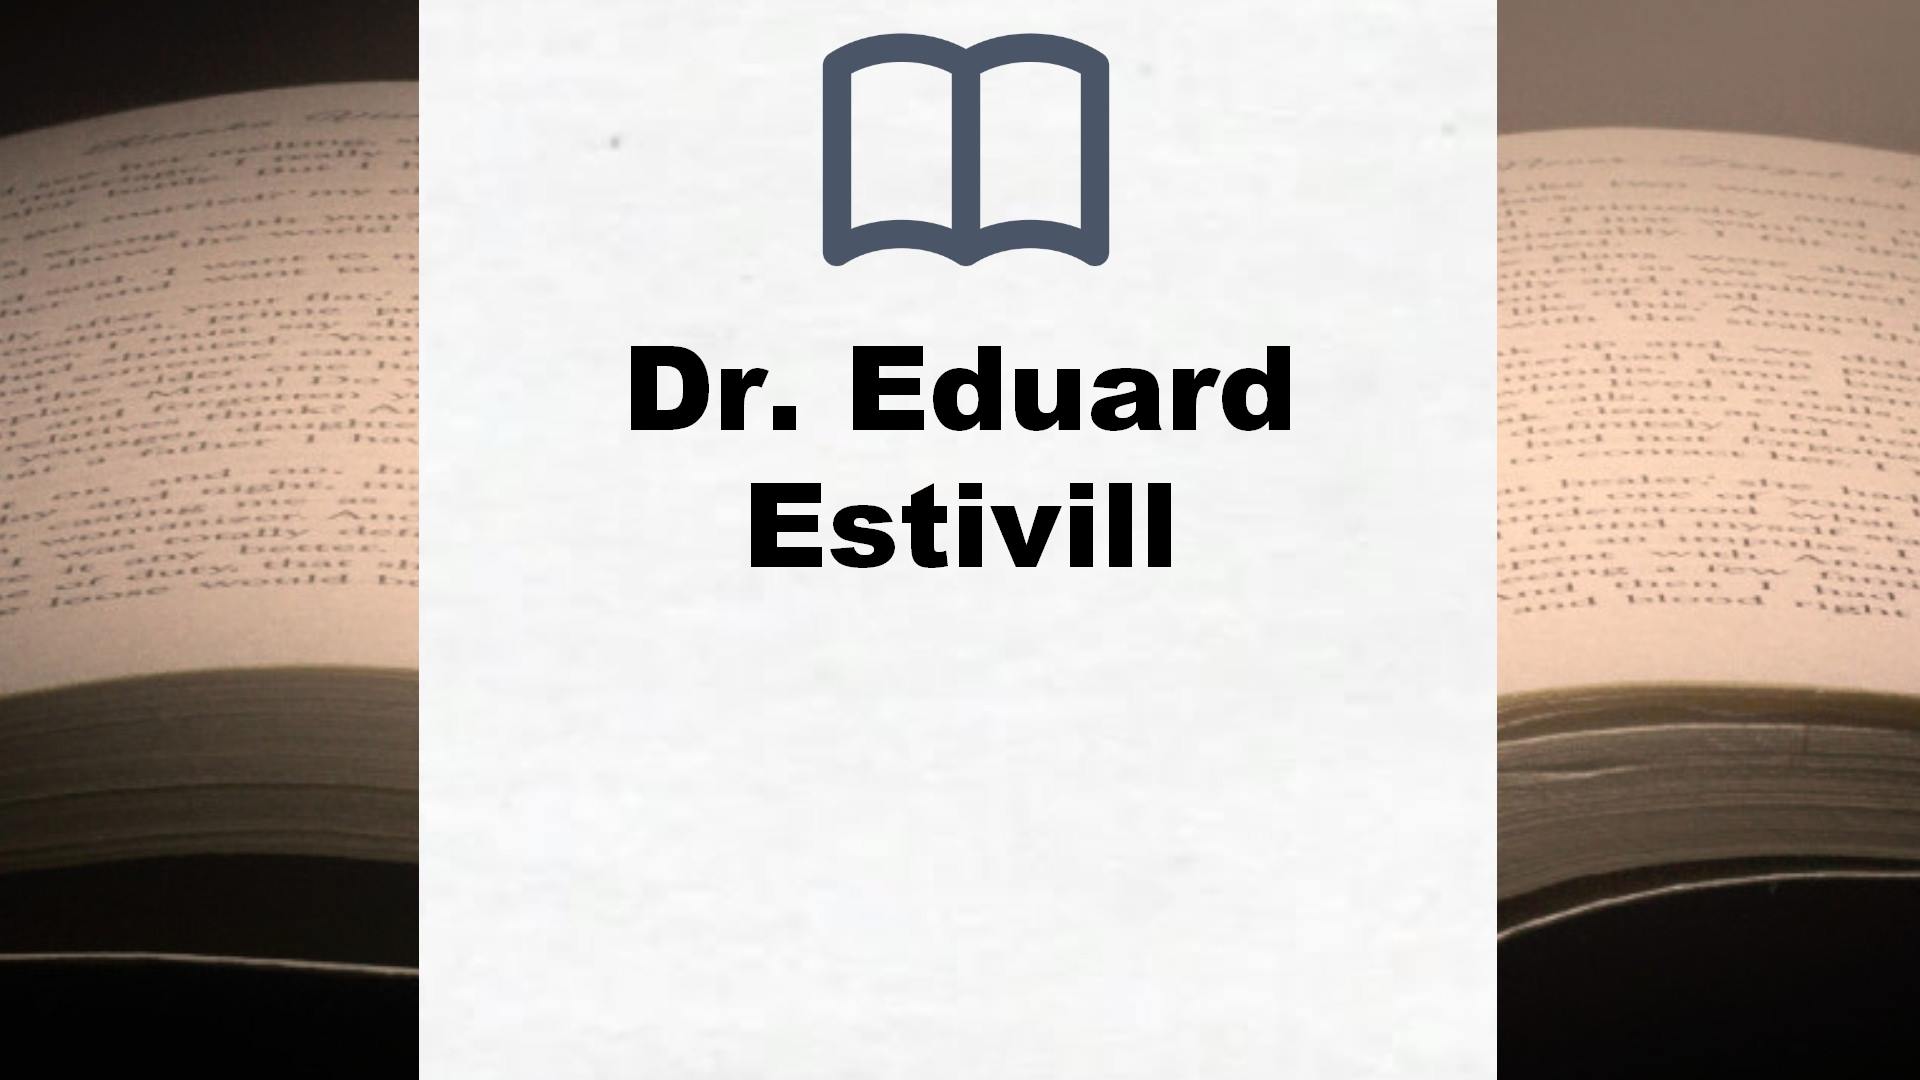 Libros Dr. Eduard Estivill